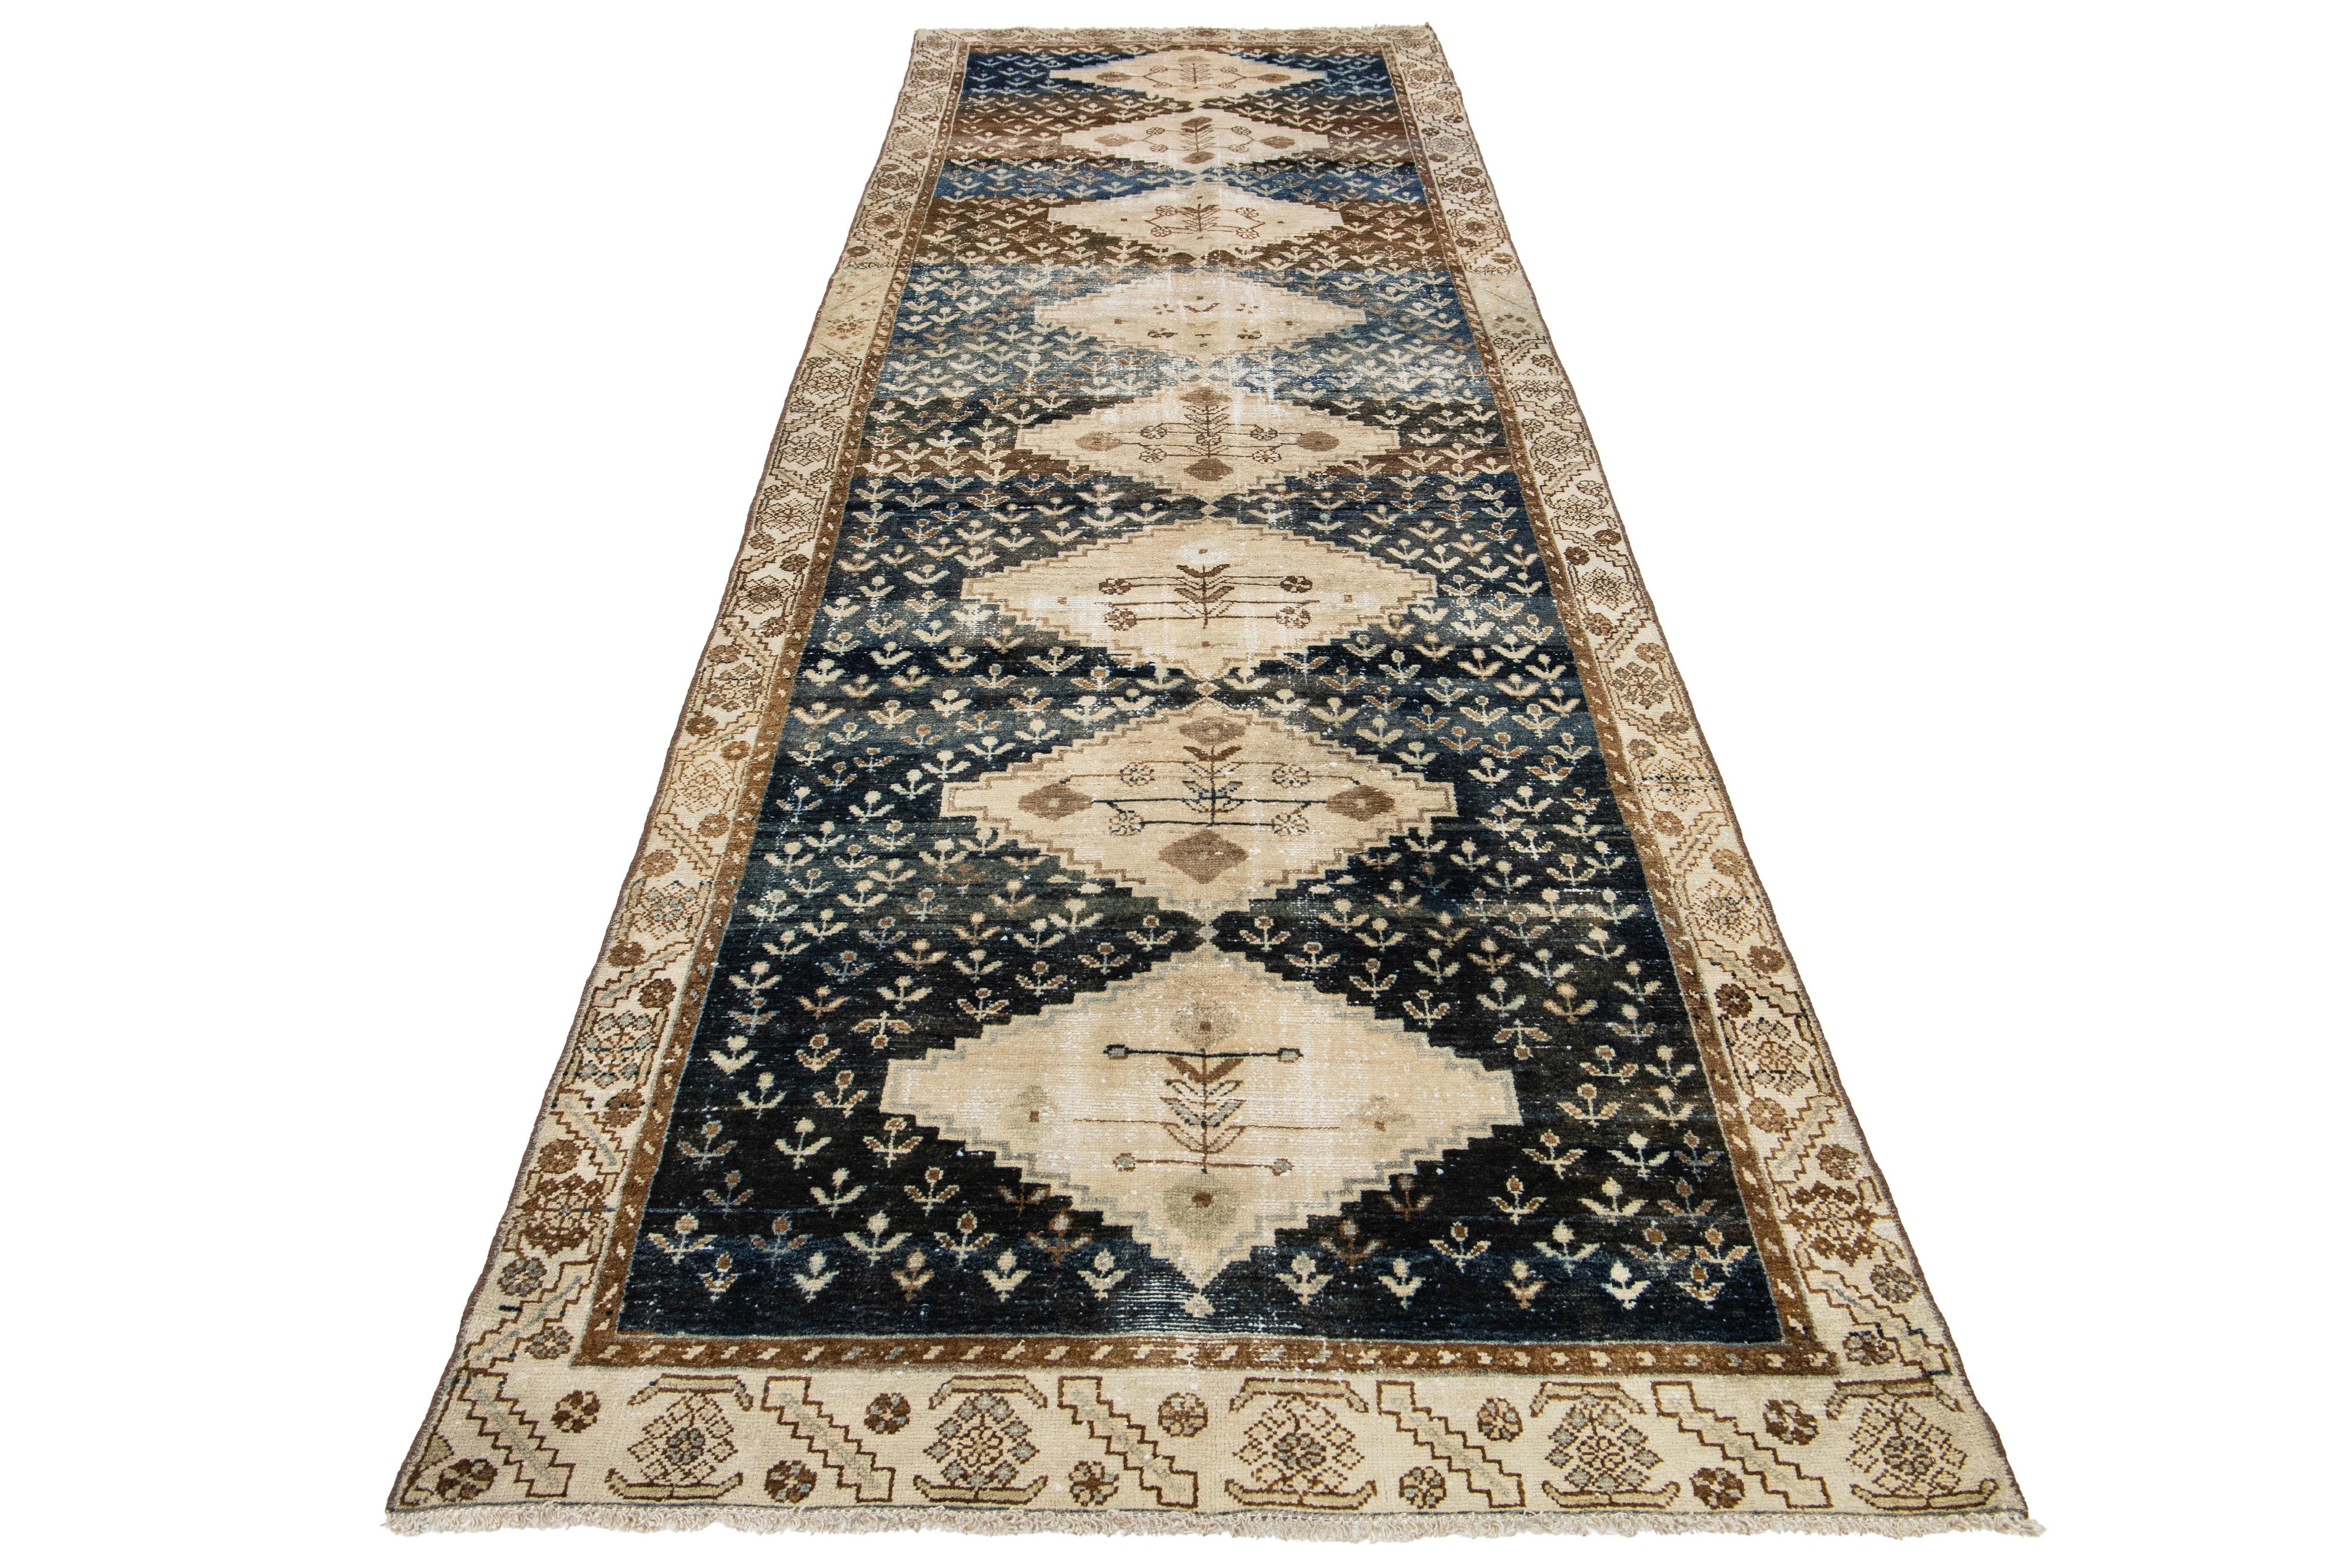 Ce tapis ancien persan Malayer est en laine nouée à la main dans un champ de couleur bleu marine et marron. Son motif allover est orné d'accents beiges, ce qui lui confère un aspect charmant.

Ce tapis mesure 4'4